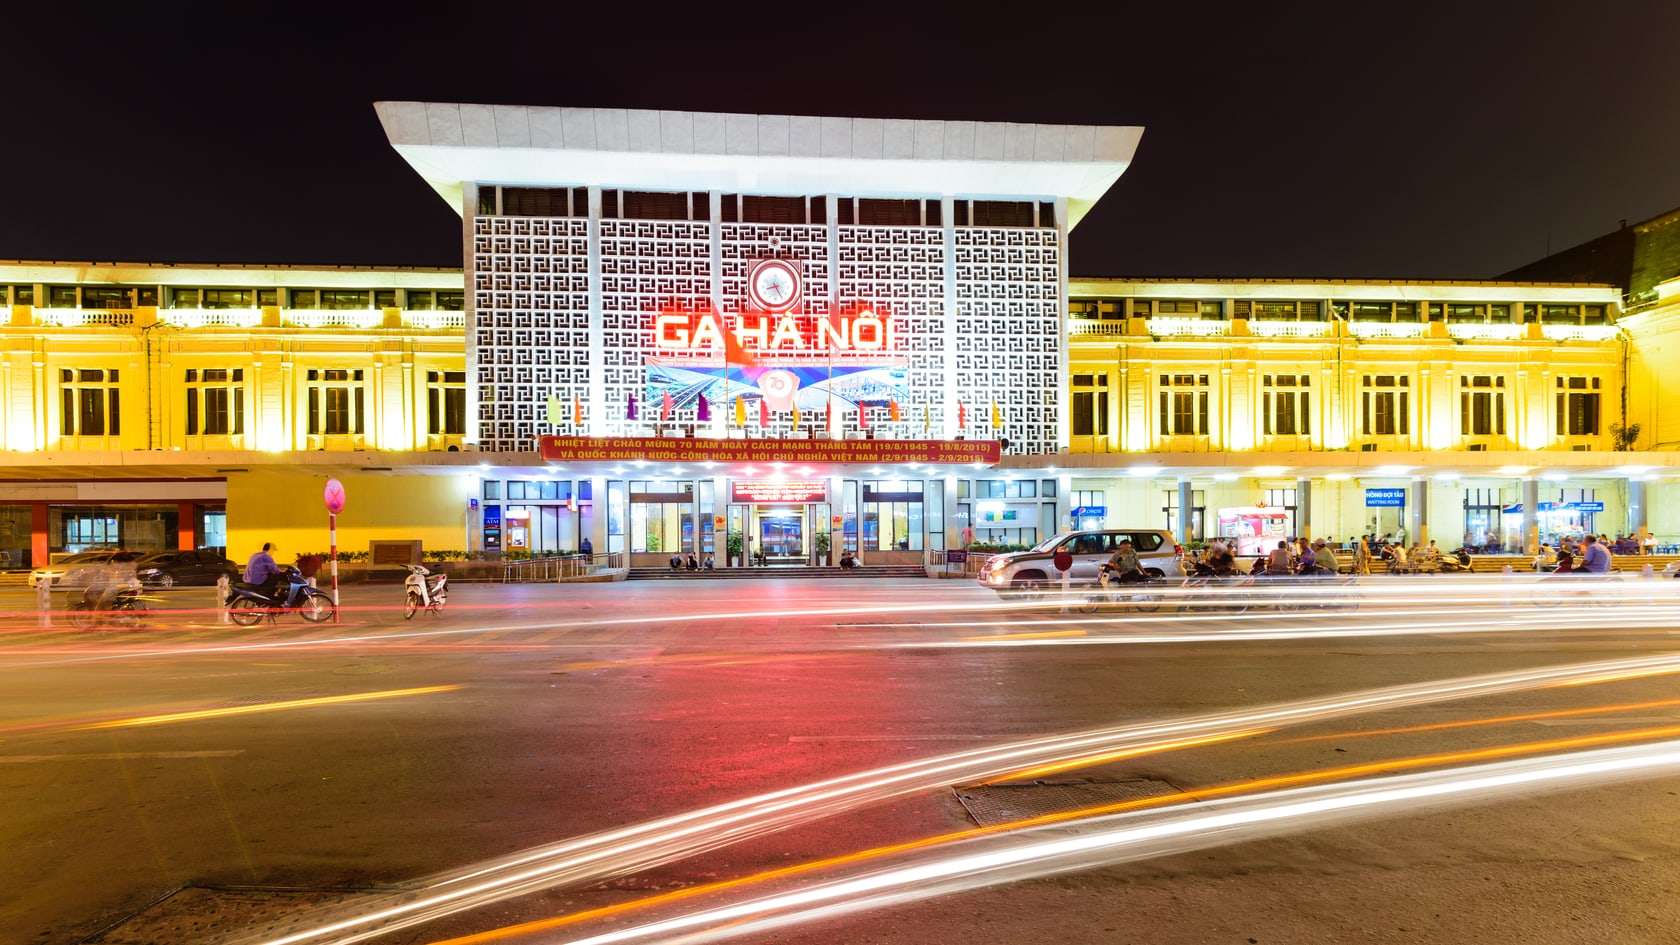 Địa chỉ nhà hàng nổi tiếng gần khu vực ga Hà Nội?
